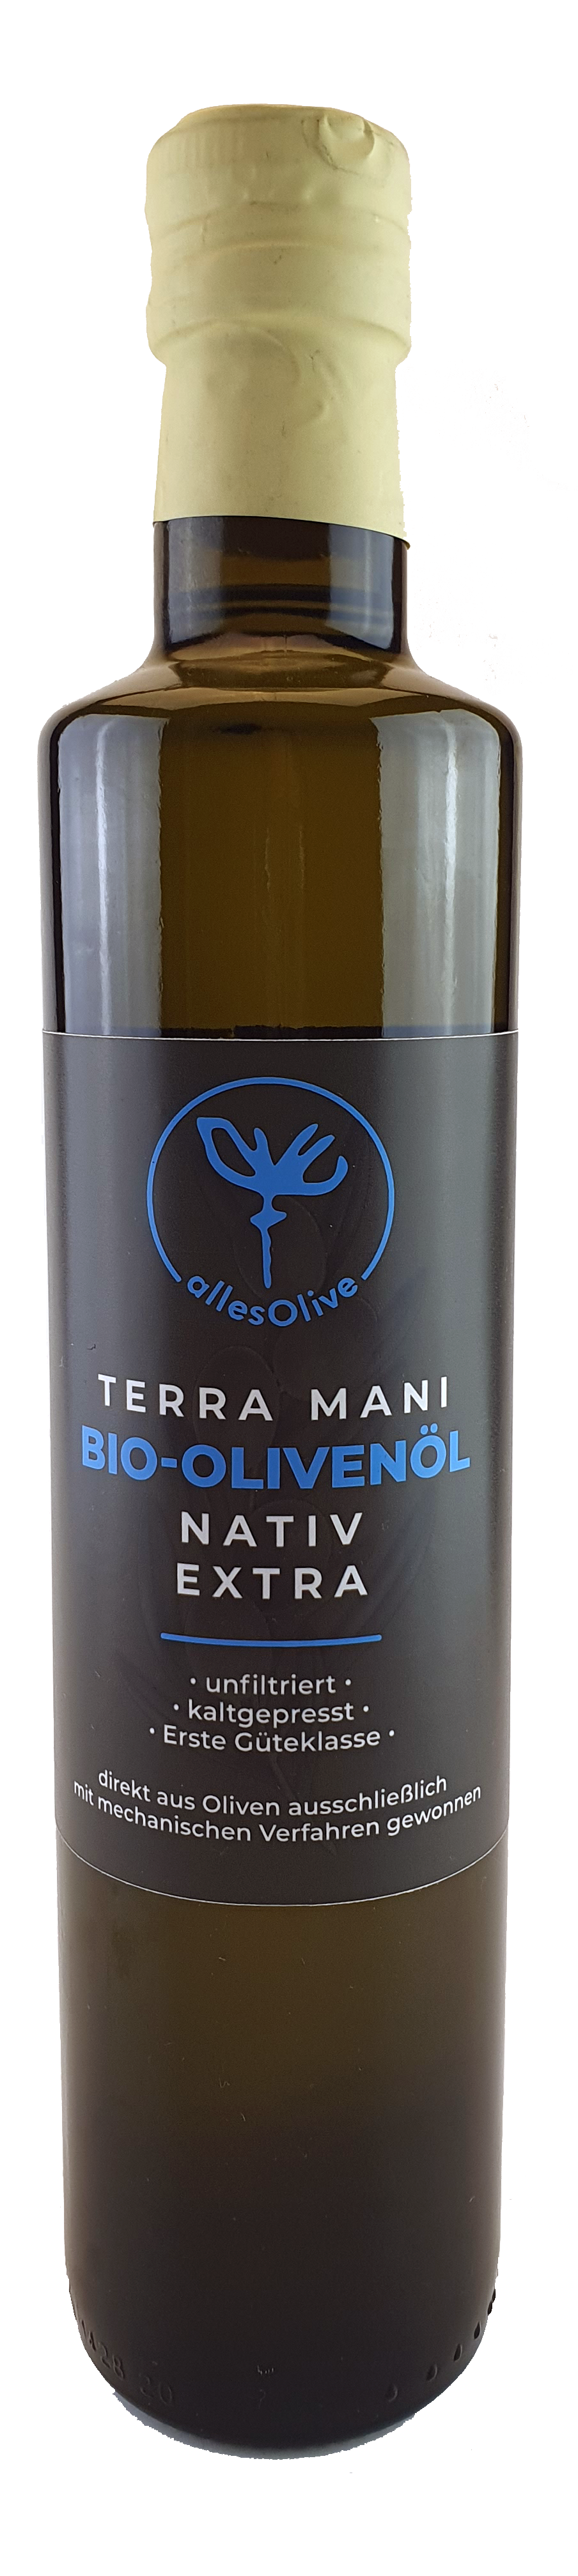 TERRA-MANI Natives Bio-Olivenöl Extra, unfiltriert, 500ml Flasche